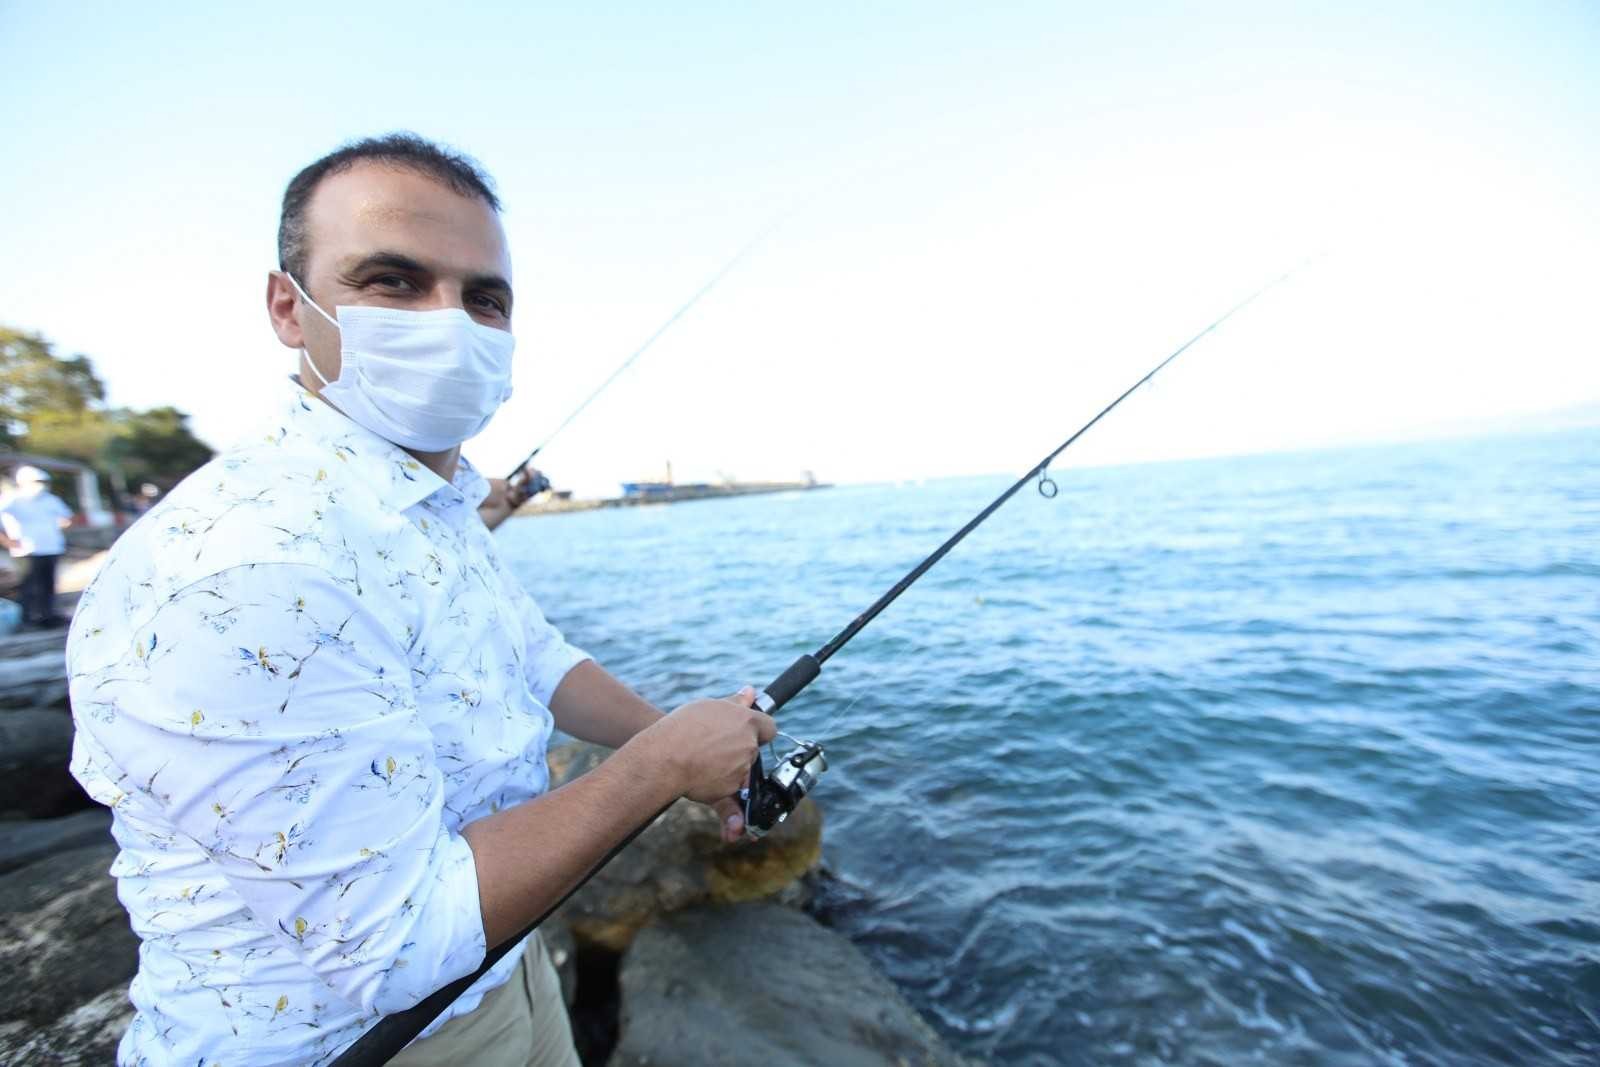 Fatsa Belediyesi 2. Balık Avı Yarışması 1 Ekim’de